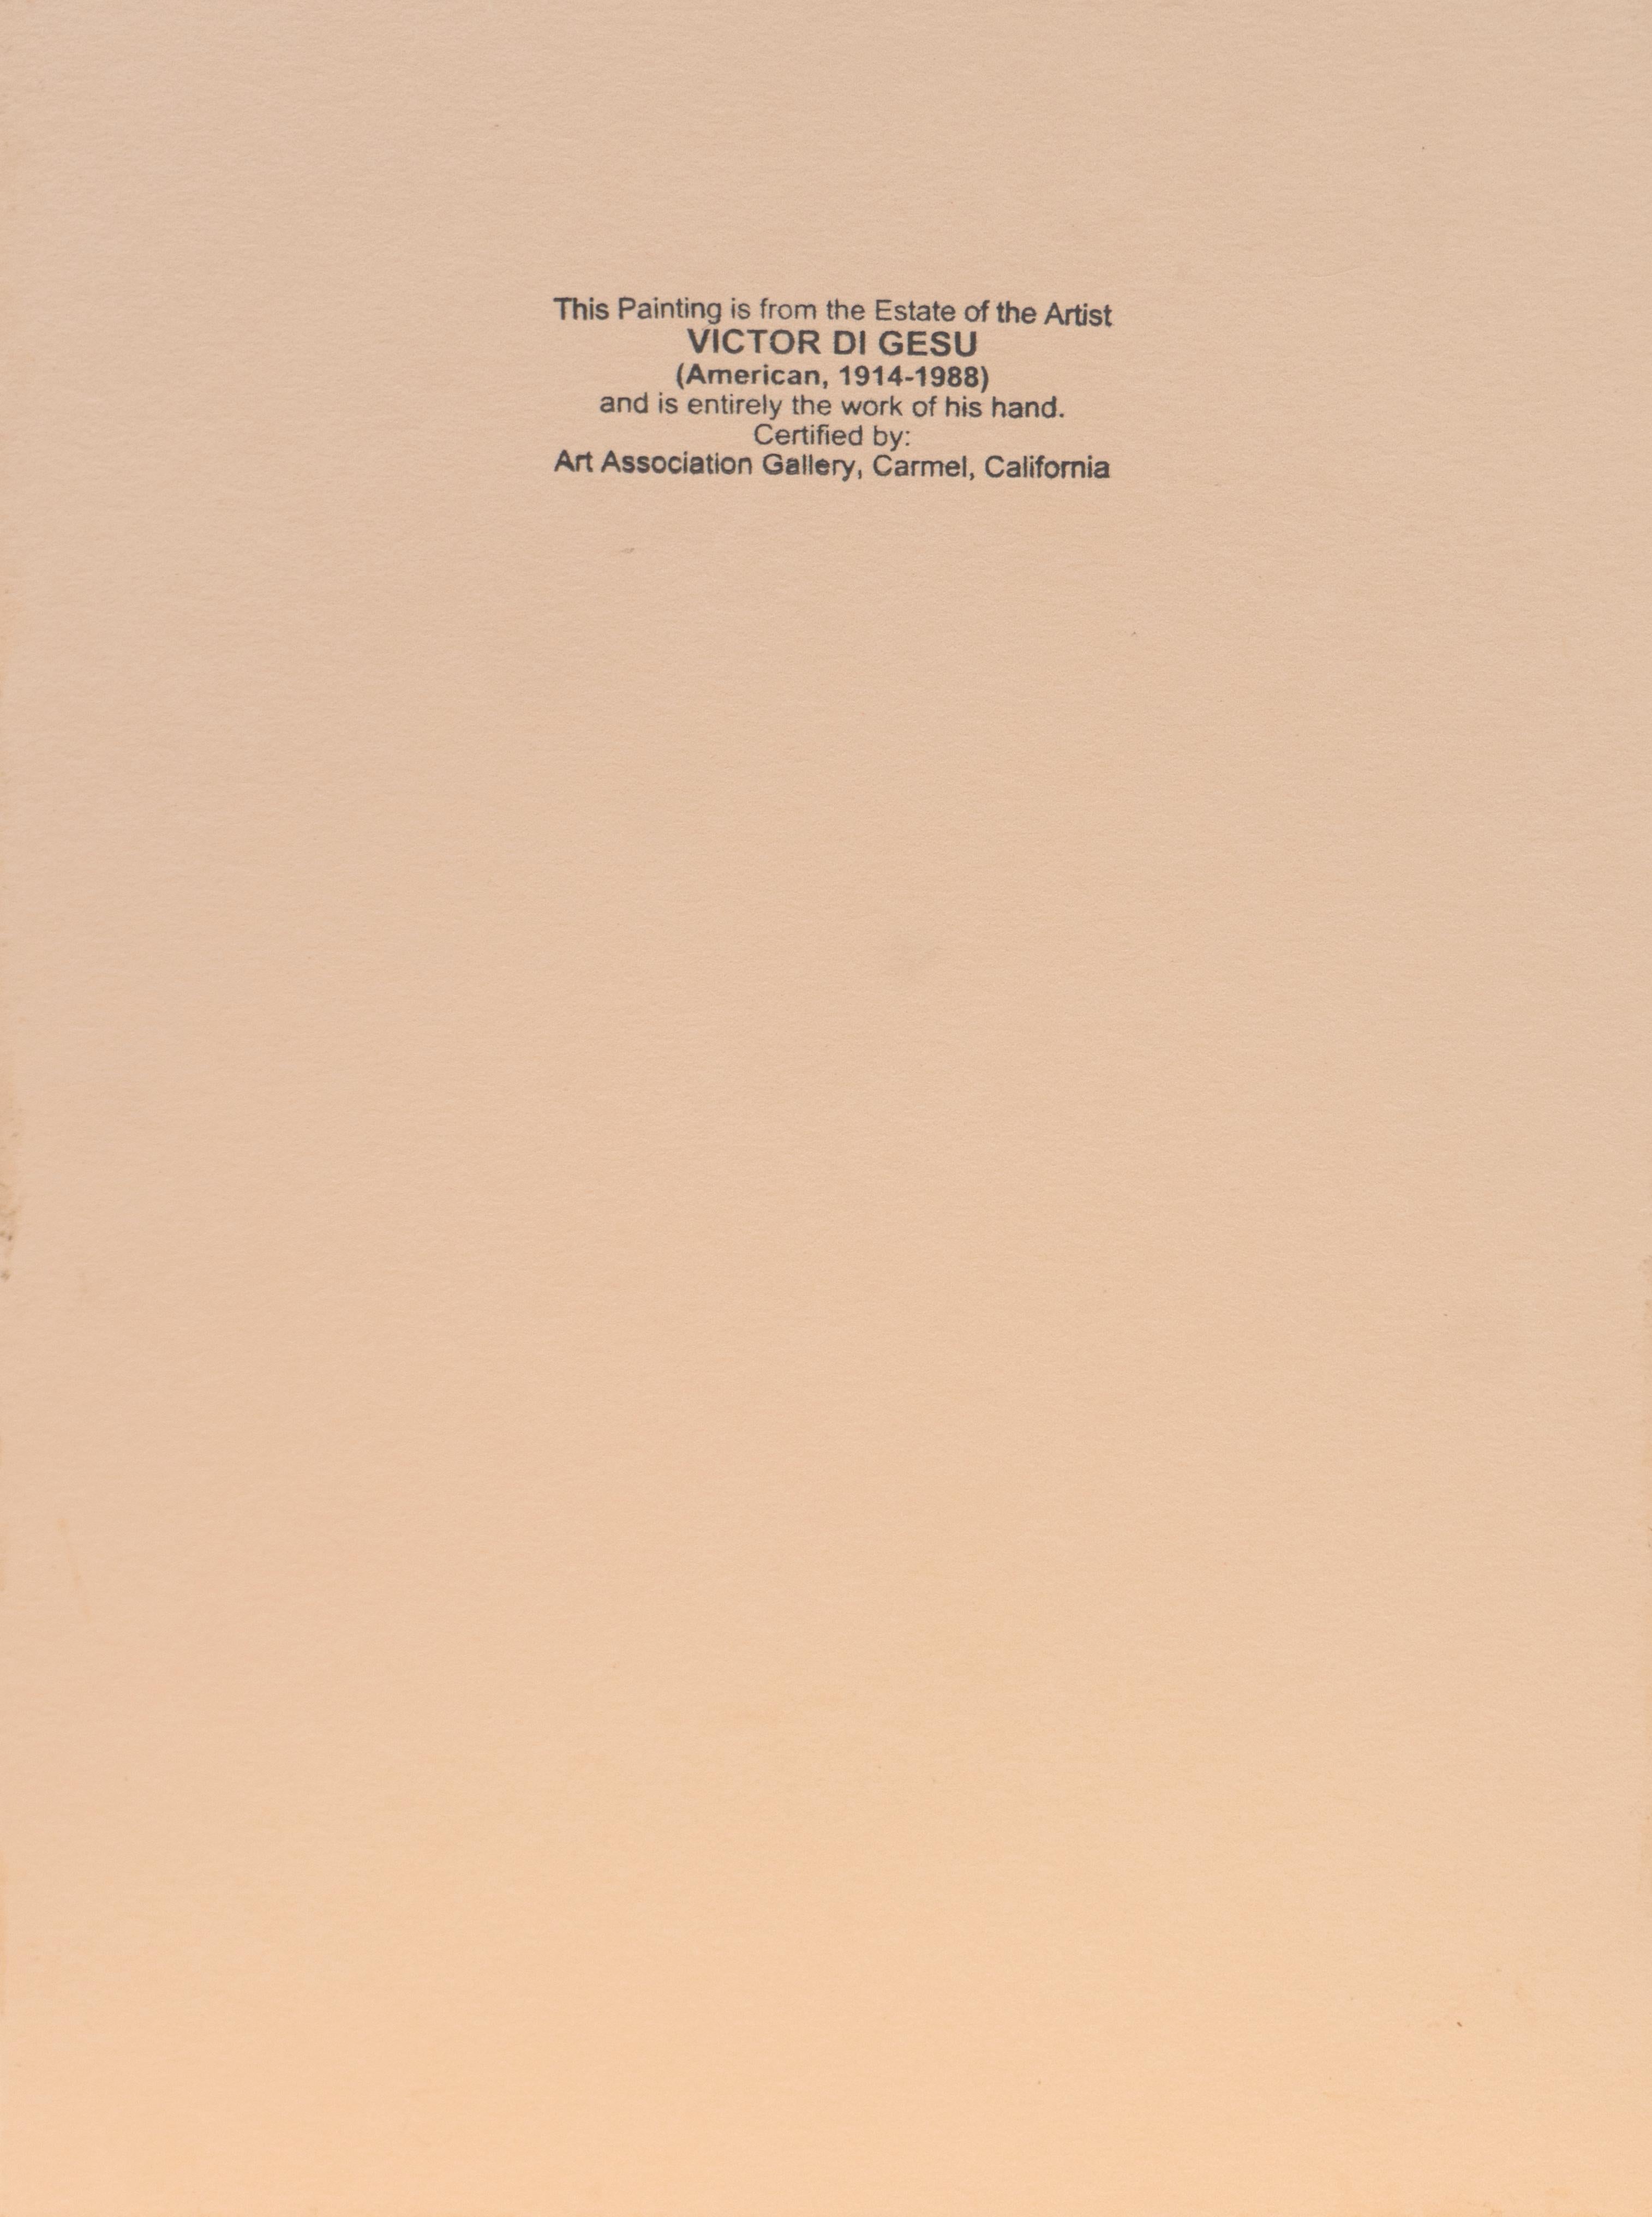 Um 1955 von Victor Di Gesu (Amerikaner, 1914-1988) geschaffen und verso mit einem Echtheitszertifikat versehen. 

Victor di Gesu, Gewinner des Prix Othon Friesz, besuchte zunächst das Los Angeles Art Center und die Chouinard Art School, bevor er